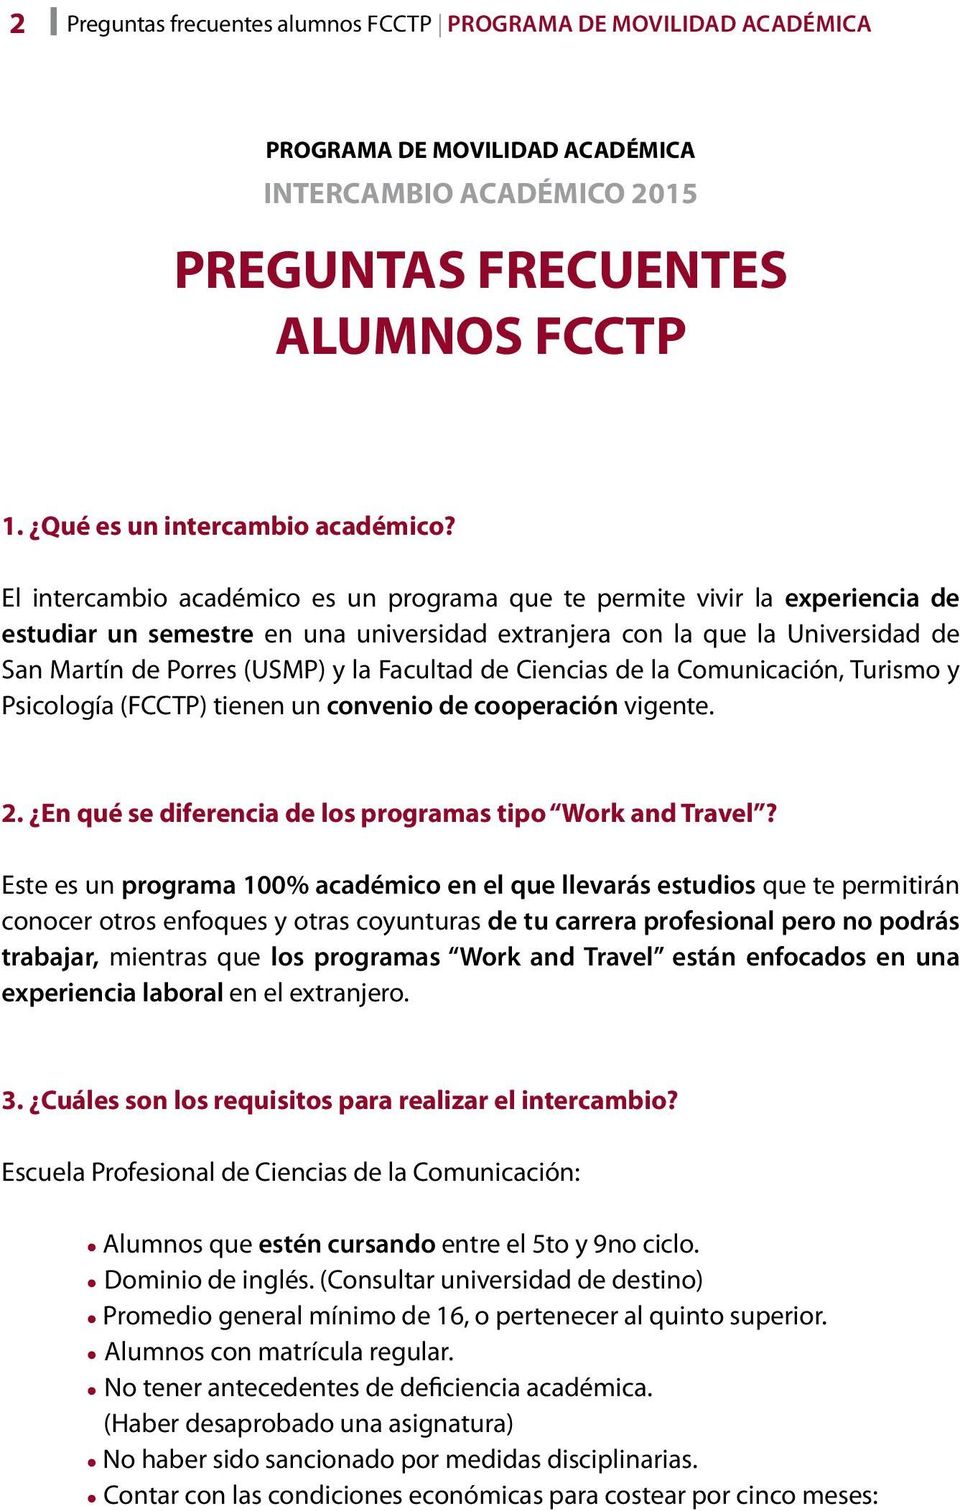 Facultad de Ciencias de la Comunicación, Turismo y Psicología (FCCTP) tienen un convenio de cooperación vigente. 2. En qué se diferencia de los programas tipo Work and Travel?